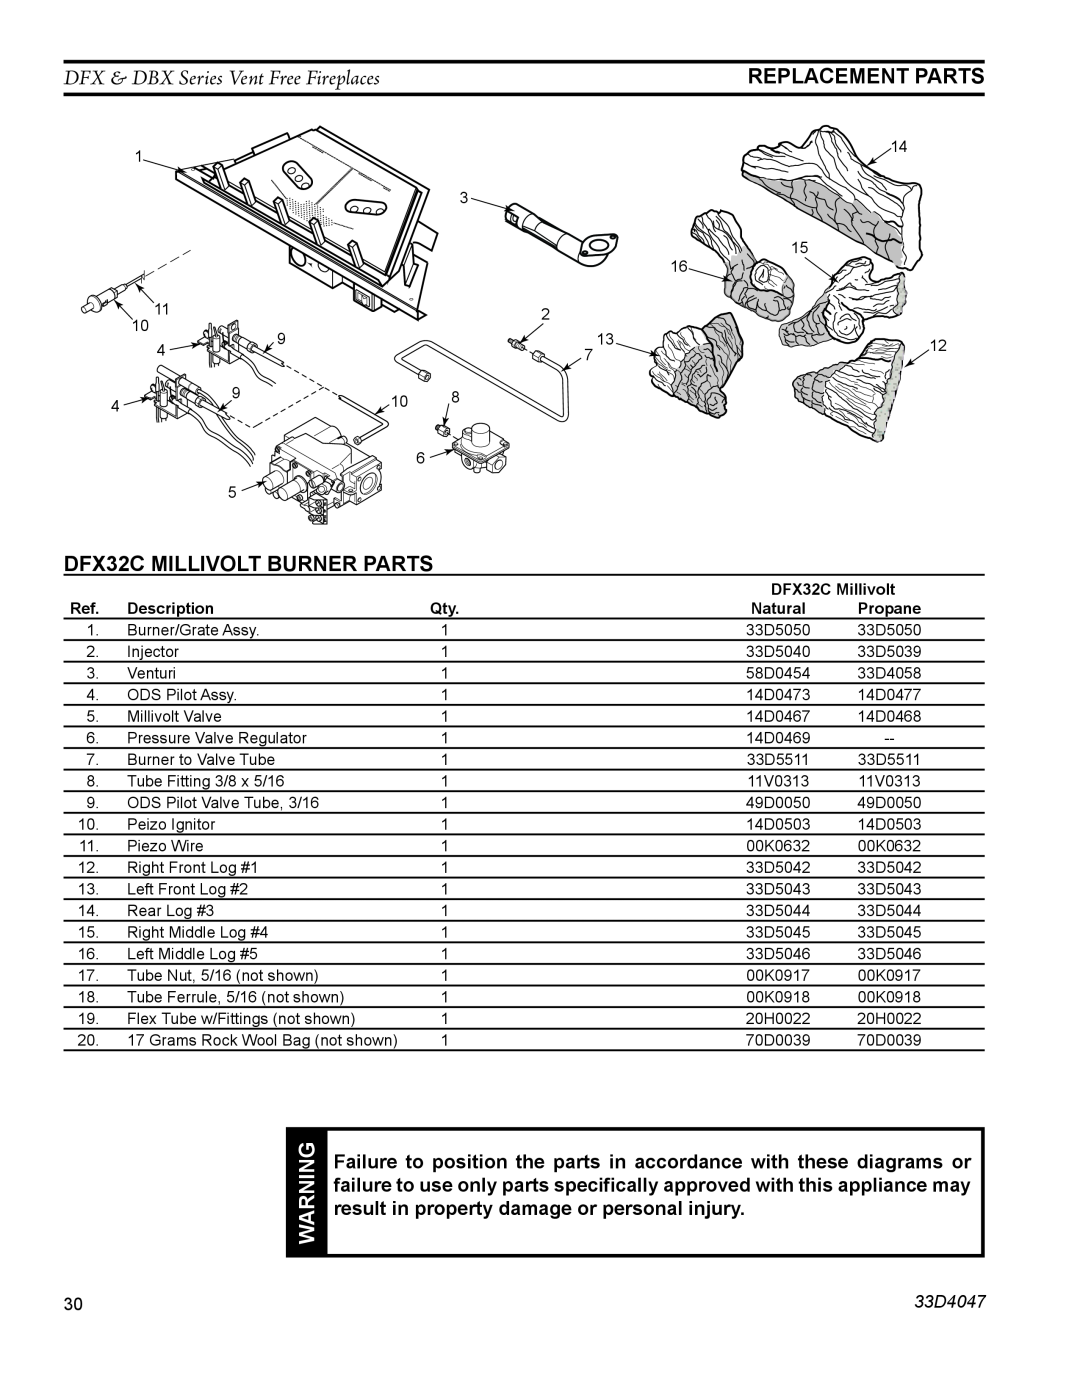 Monessen Hearth DBX24C Replacement Parts, DFX32C Millivolt Burner Parts, DFX & DBX Series Vent Free Fireplaces, 33D4047 